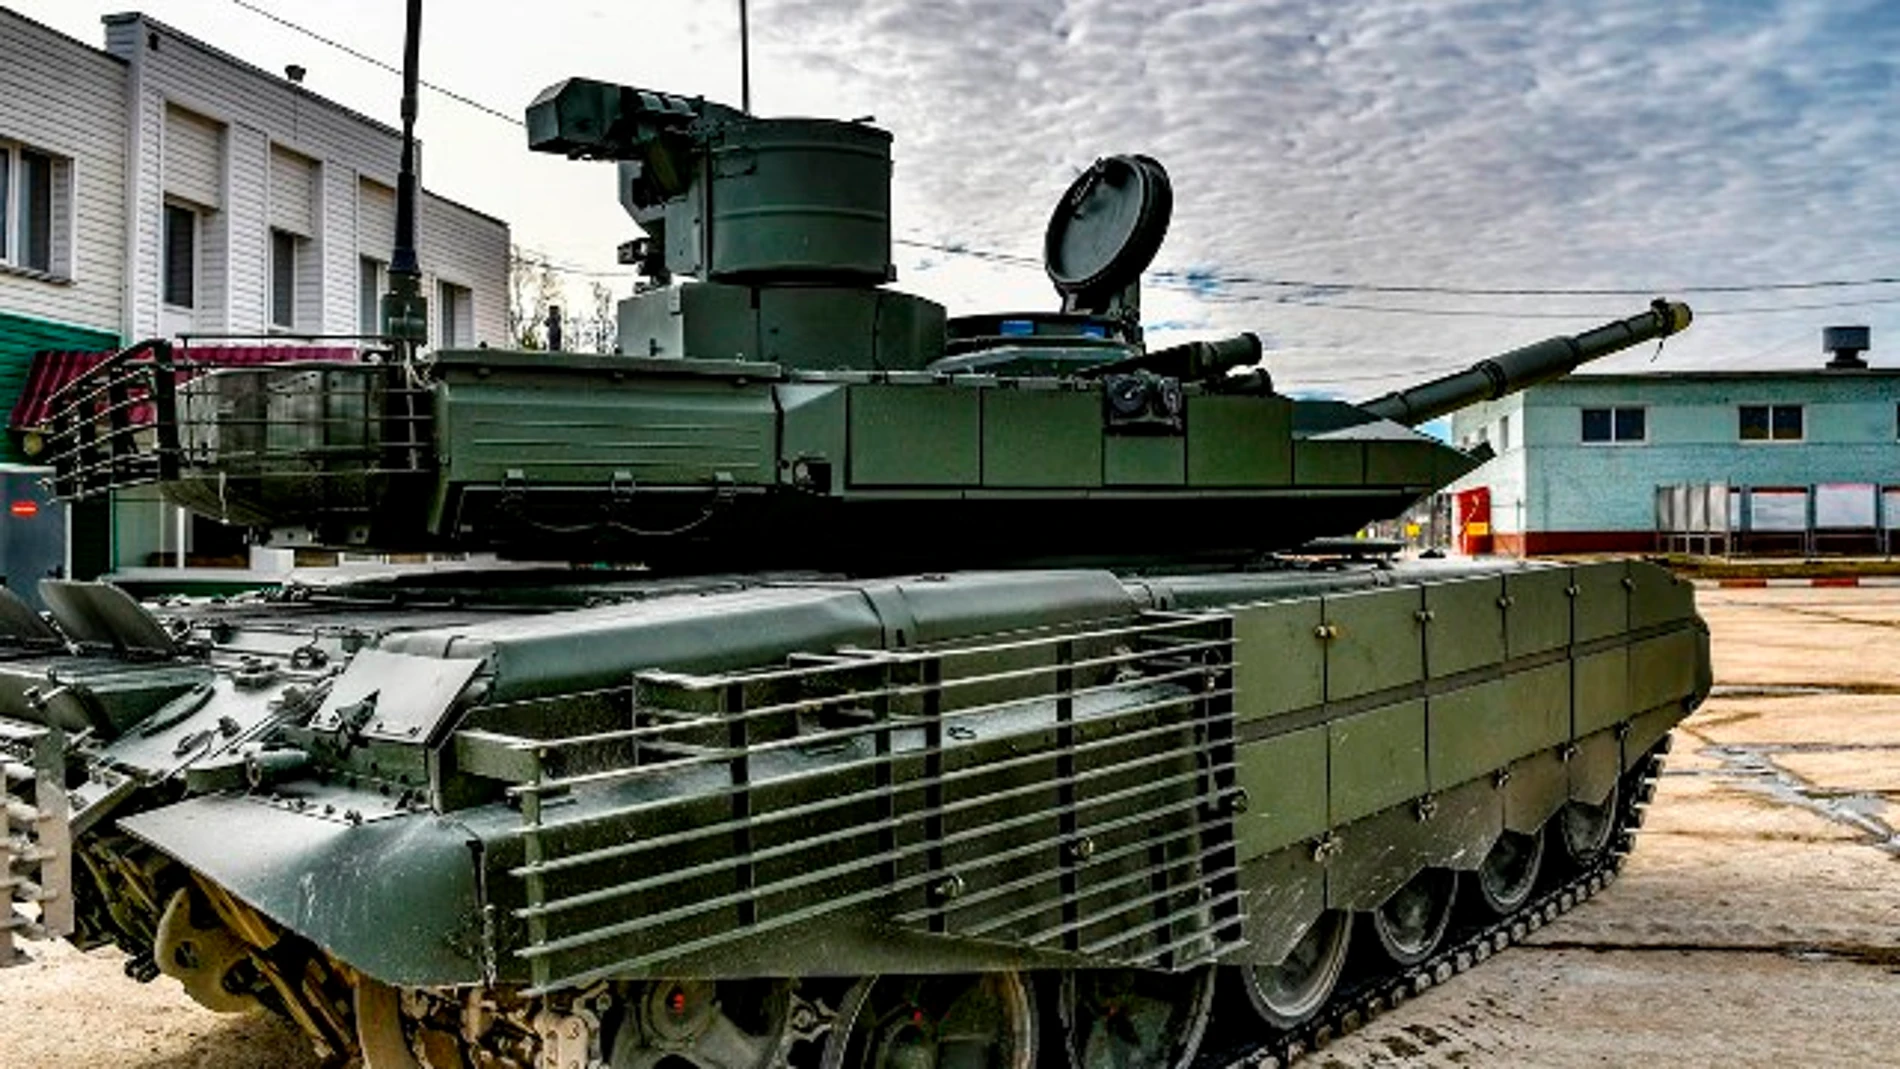 Imagen del T-90M, el tanque más avanzado de Rusia